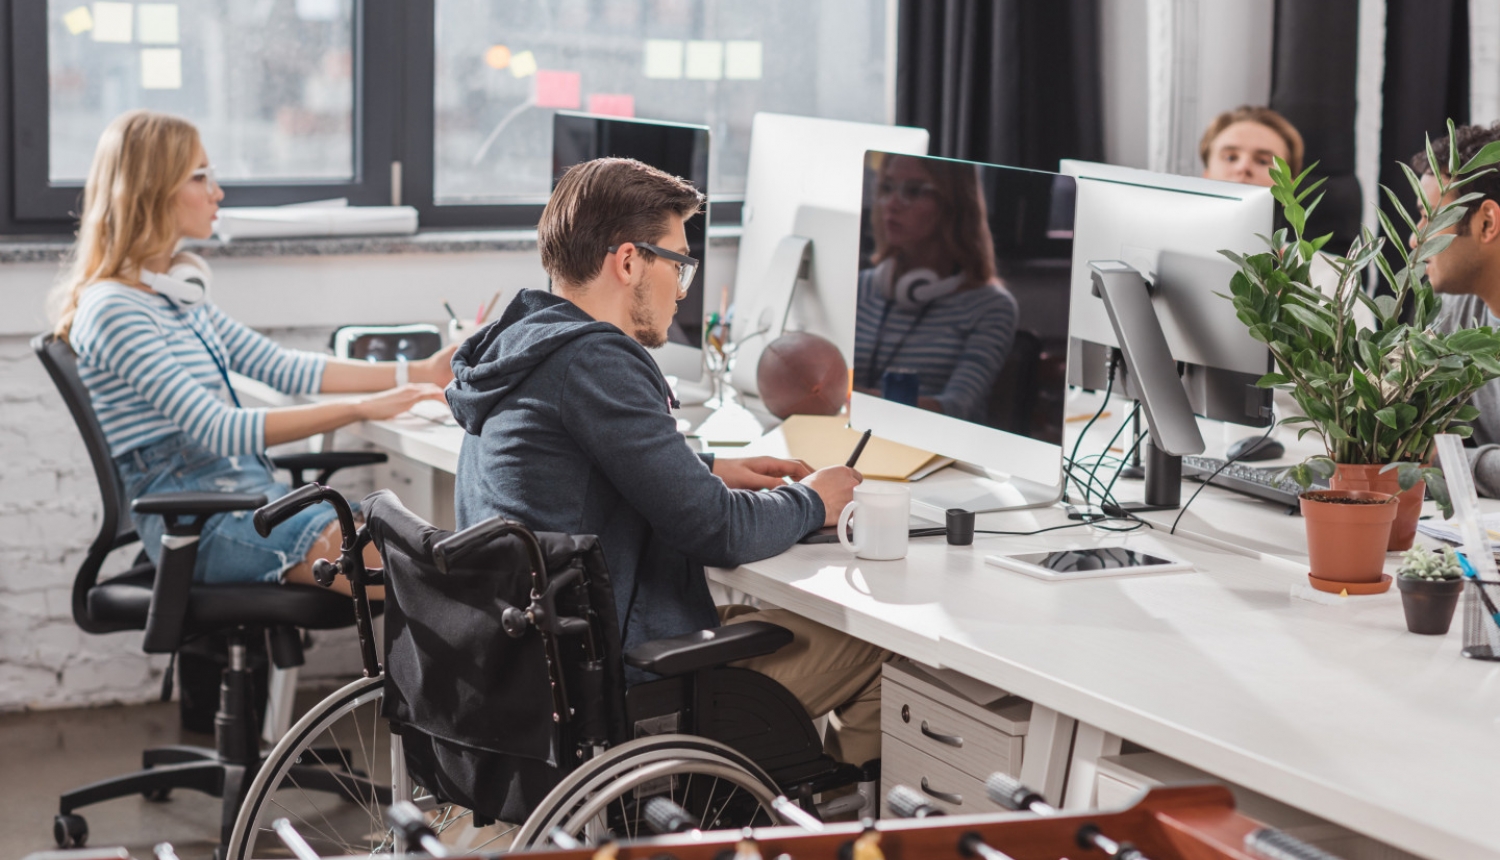 ilustratīva bilde ar cilvēku ar invalidināti ofisā pie galda strādājot blakus kolēģiem.